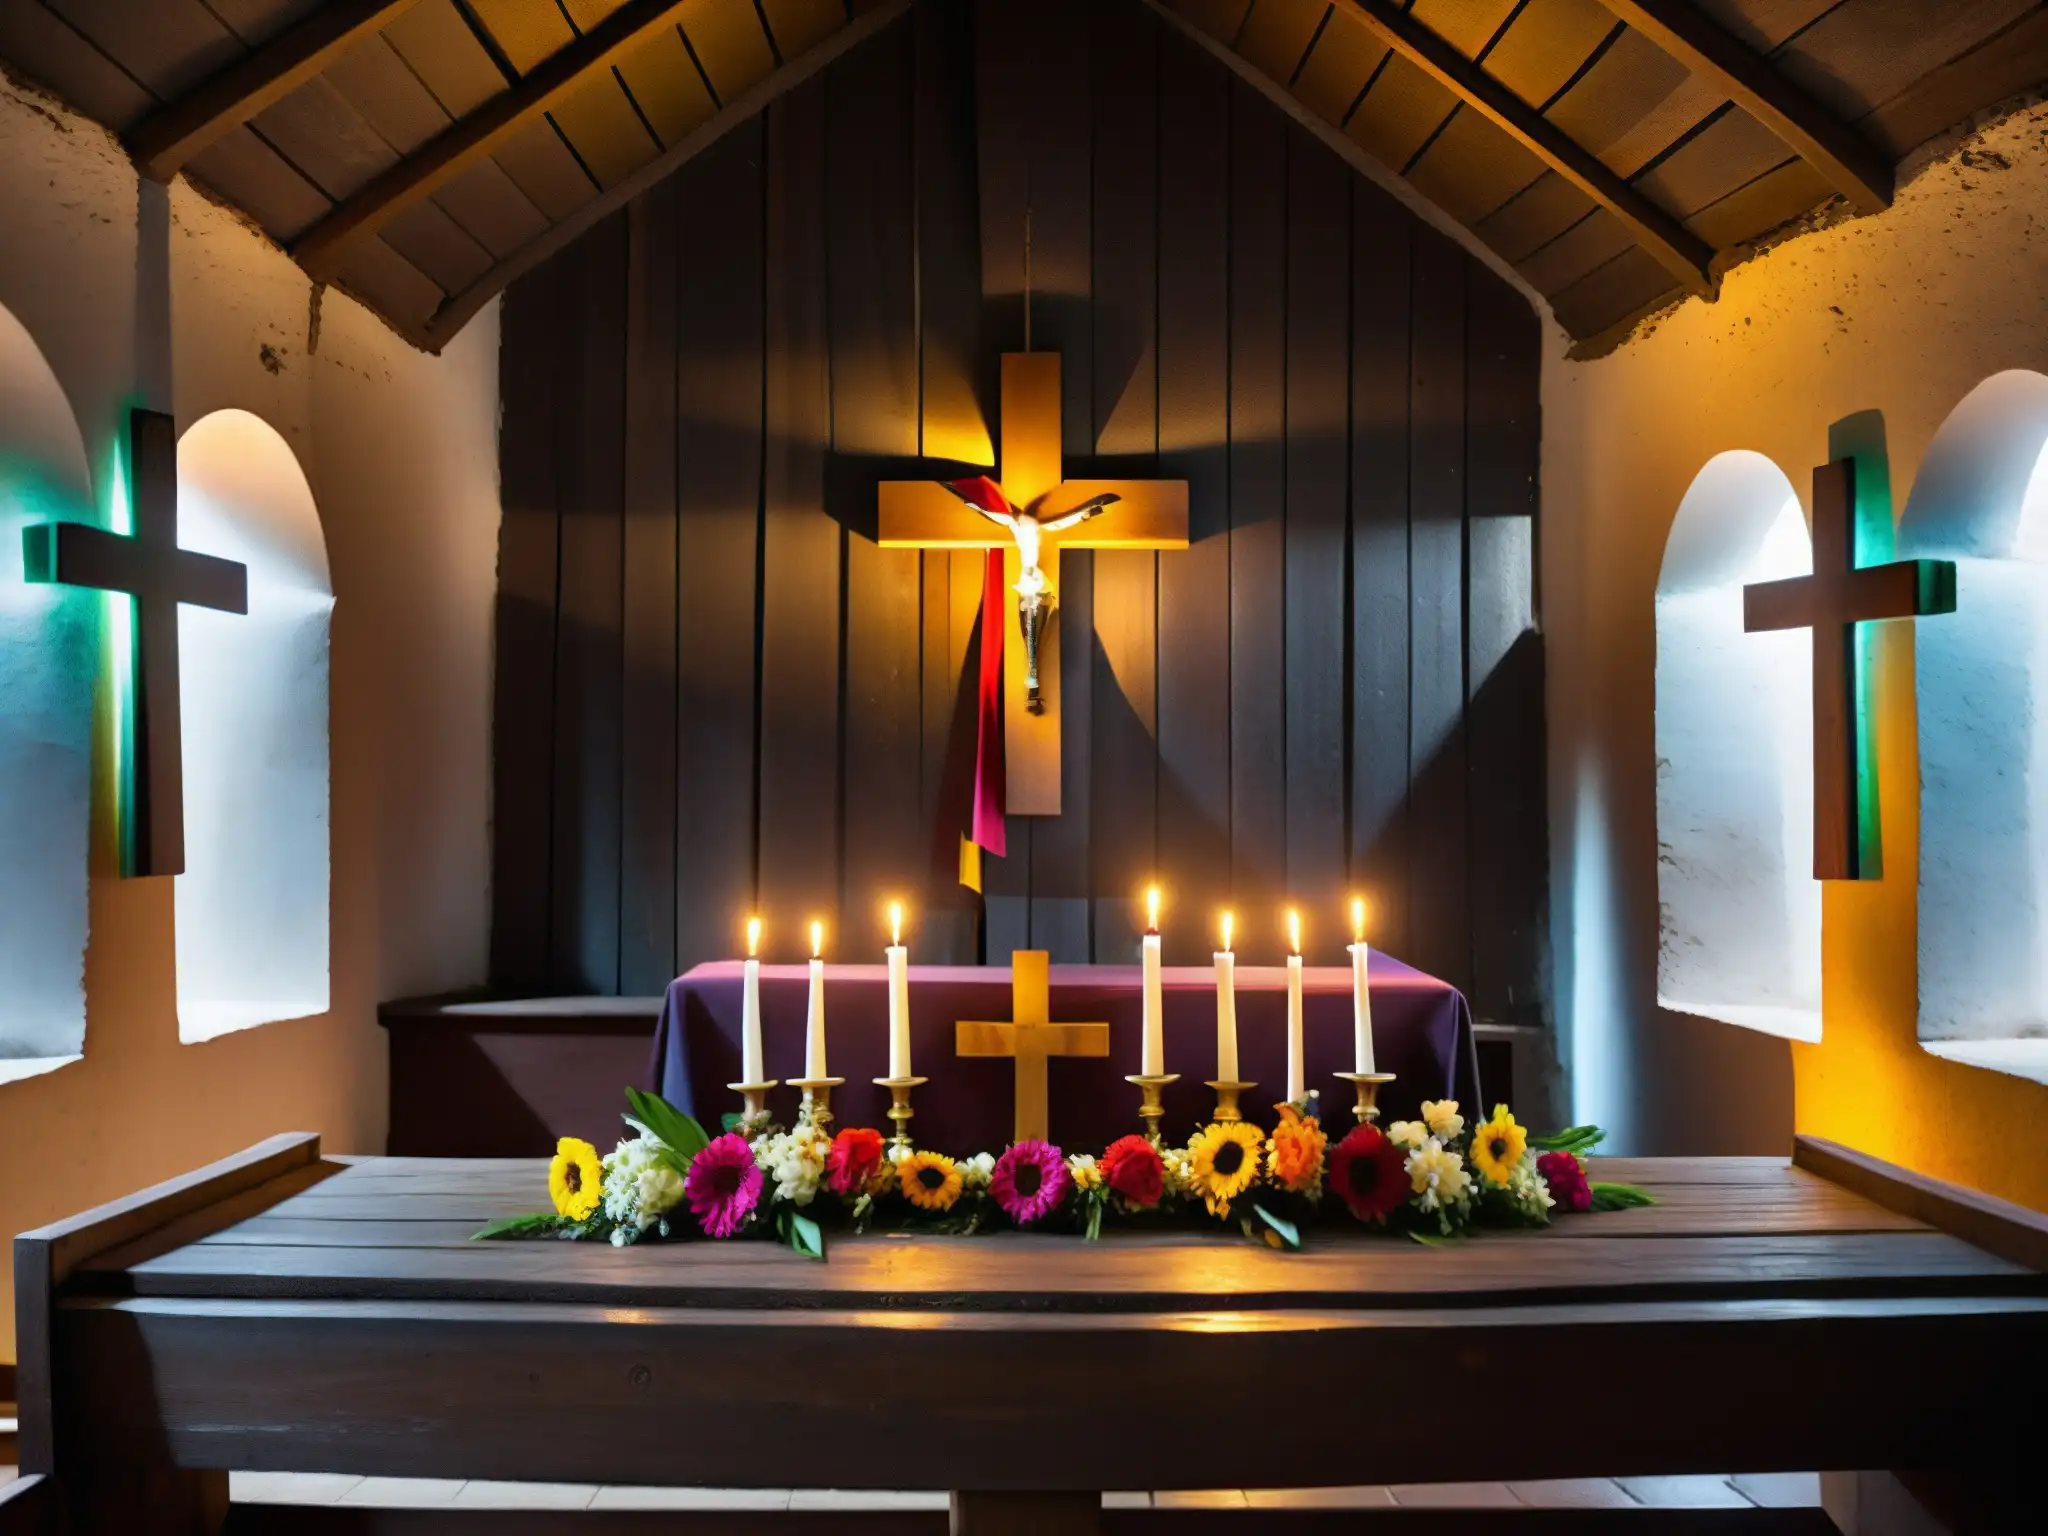 Relato de fe y terror en una iglesia ecuatoriana, con velas titilantes y una cruz adornada con cintas y flores